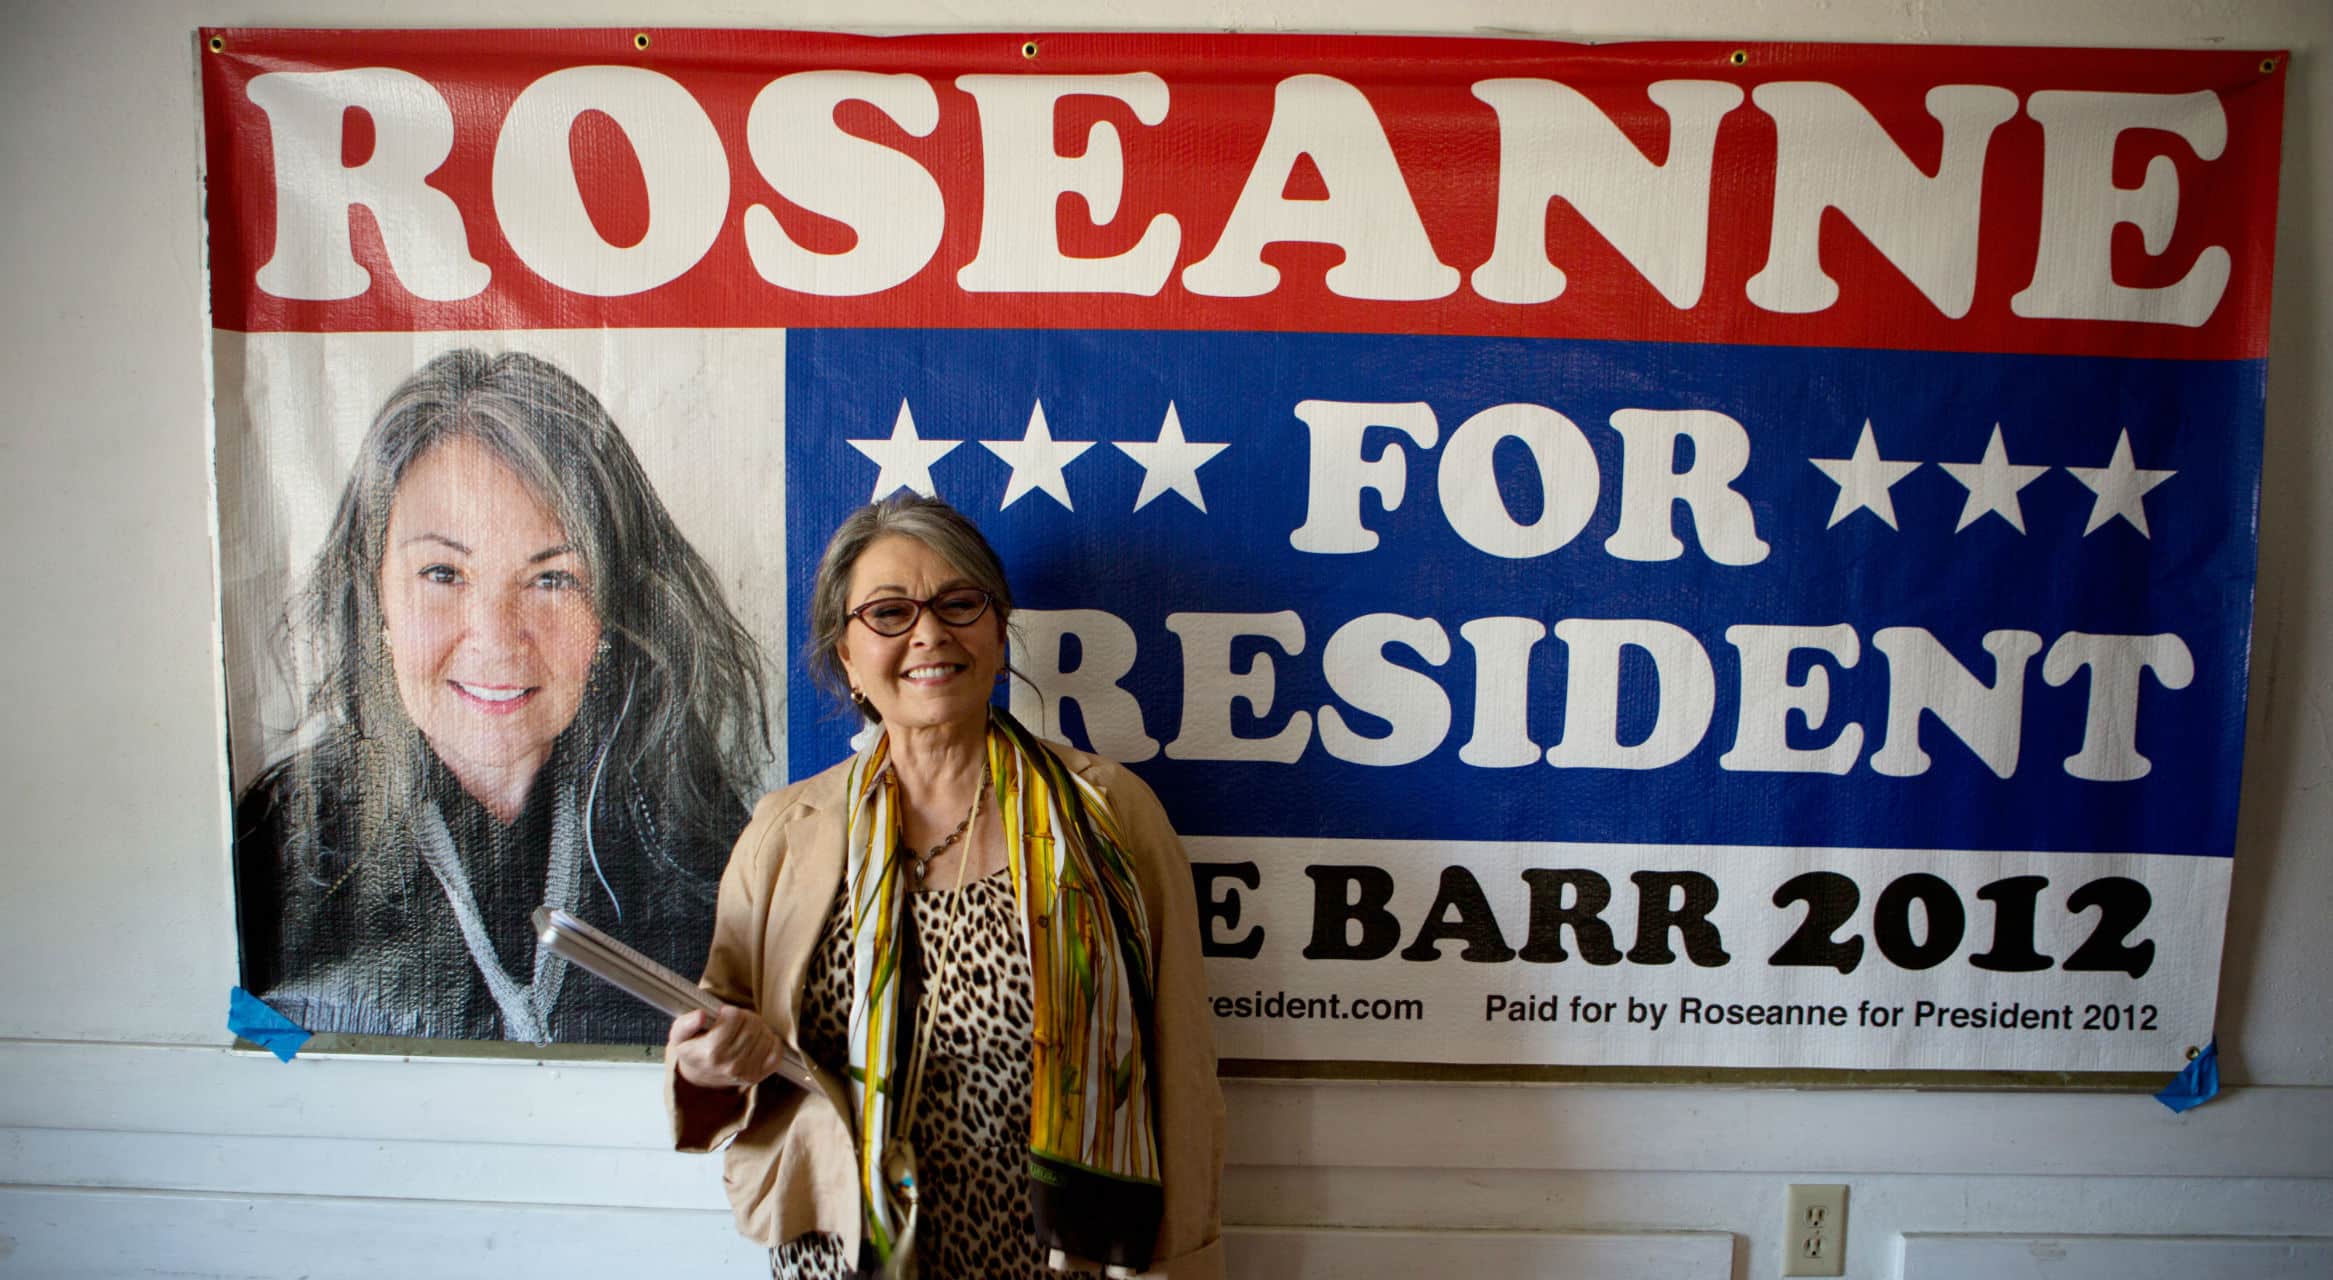 ROSEANNE FOR PRESIDENT!, Roseanne Barr, 2015